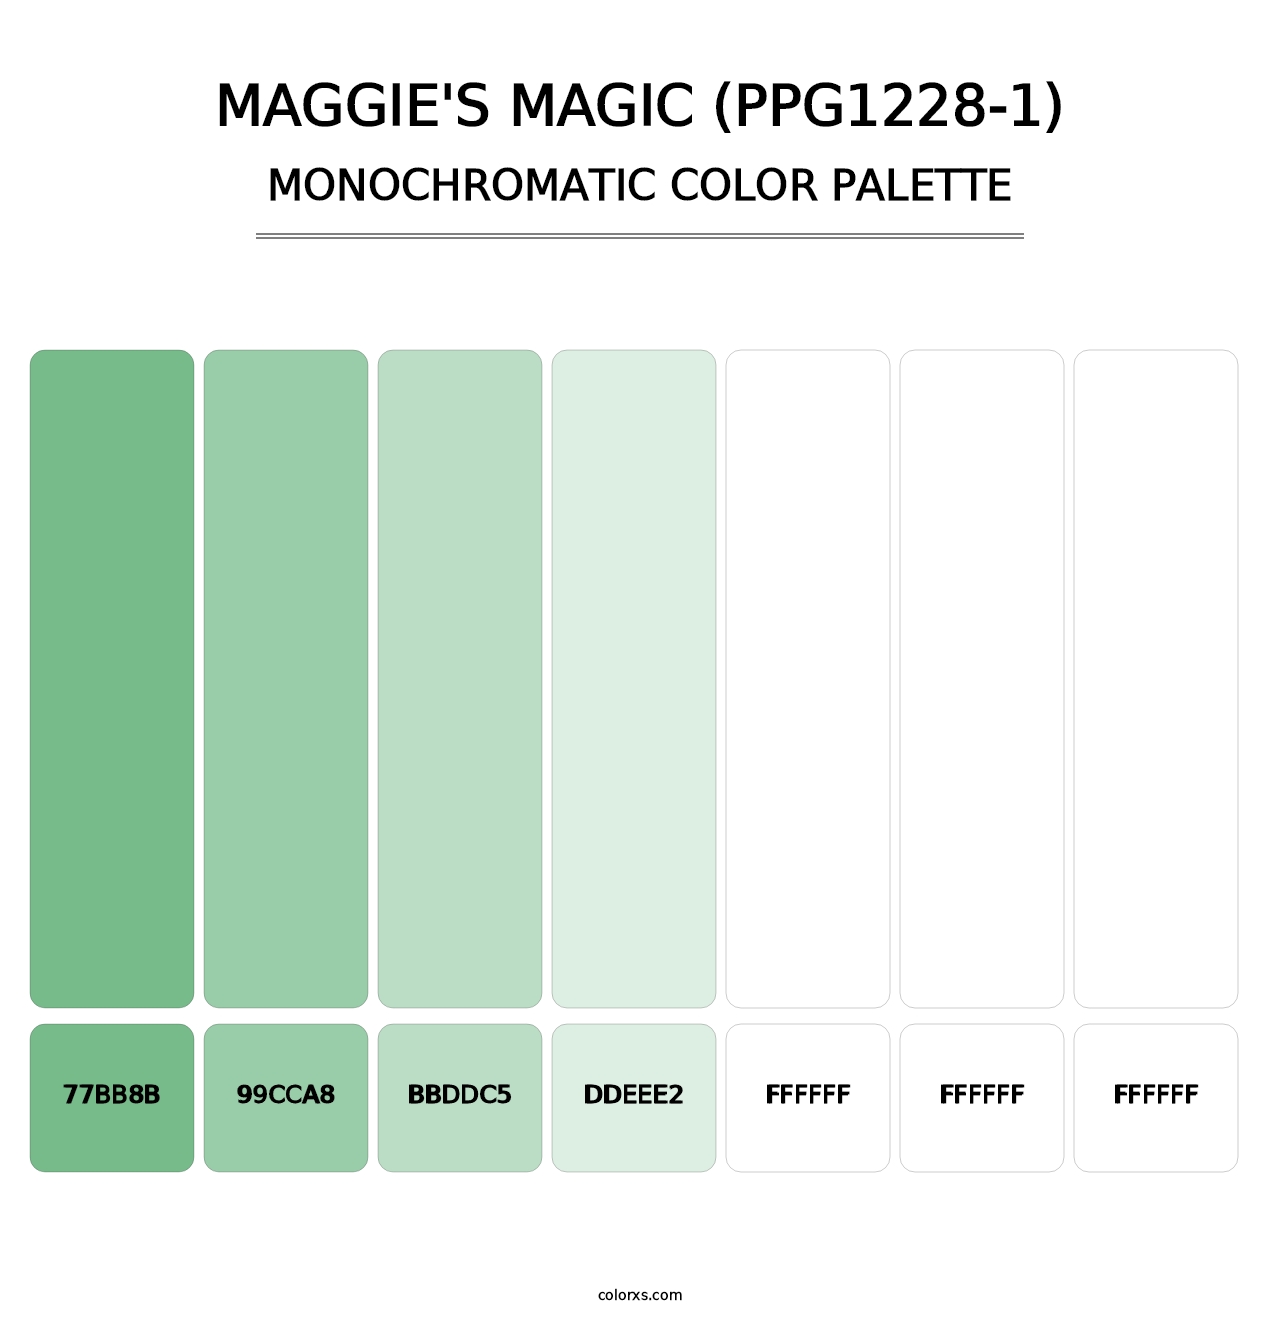 Maggie's Magic (PPG1228-1) - Monochromatic Color Palette